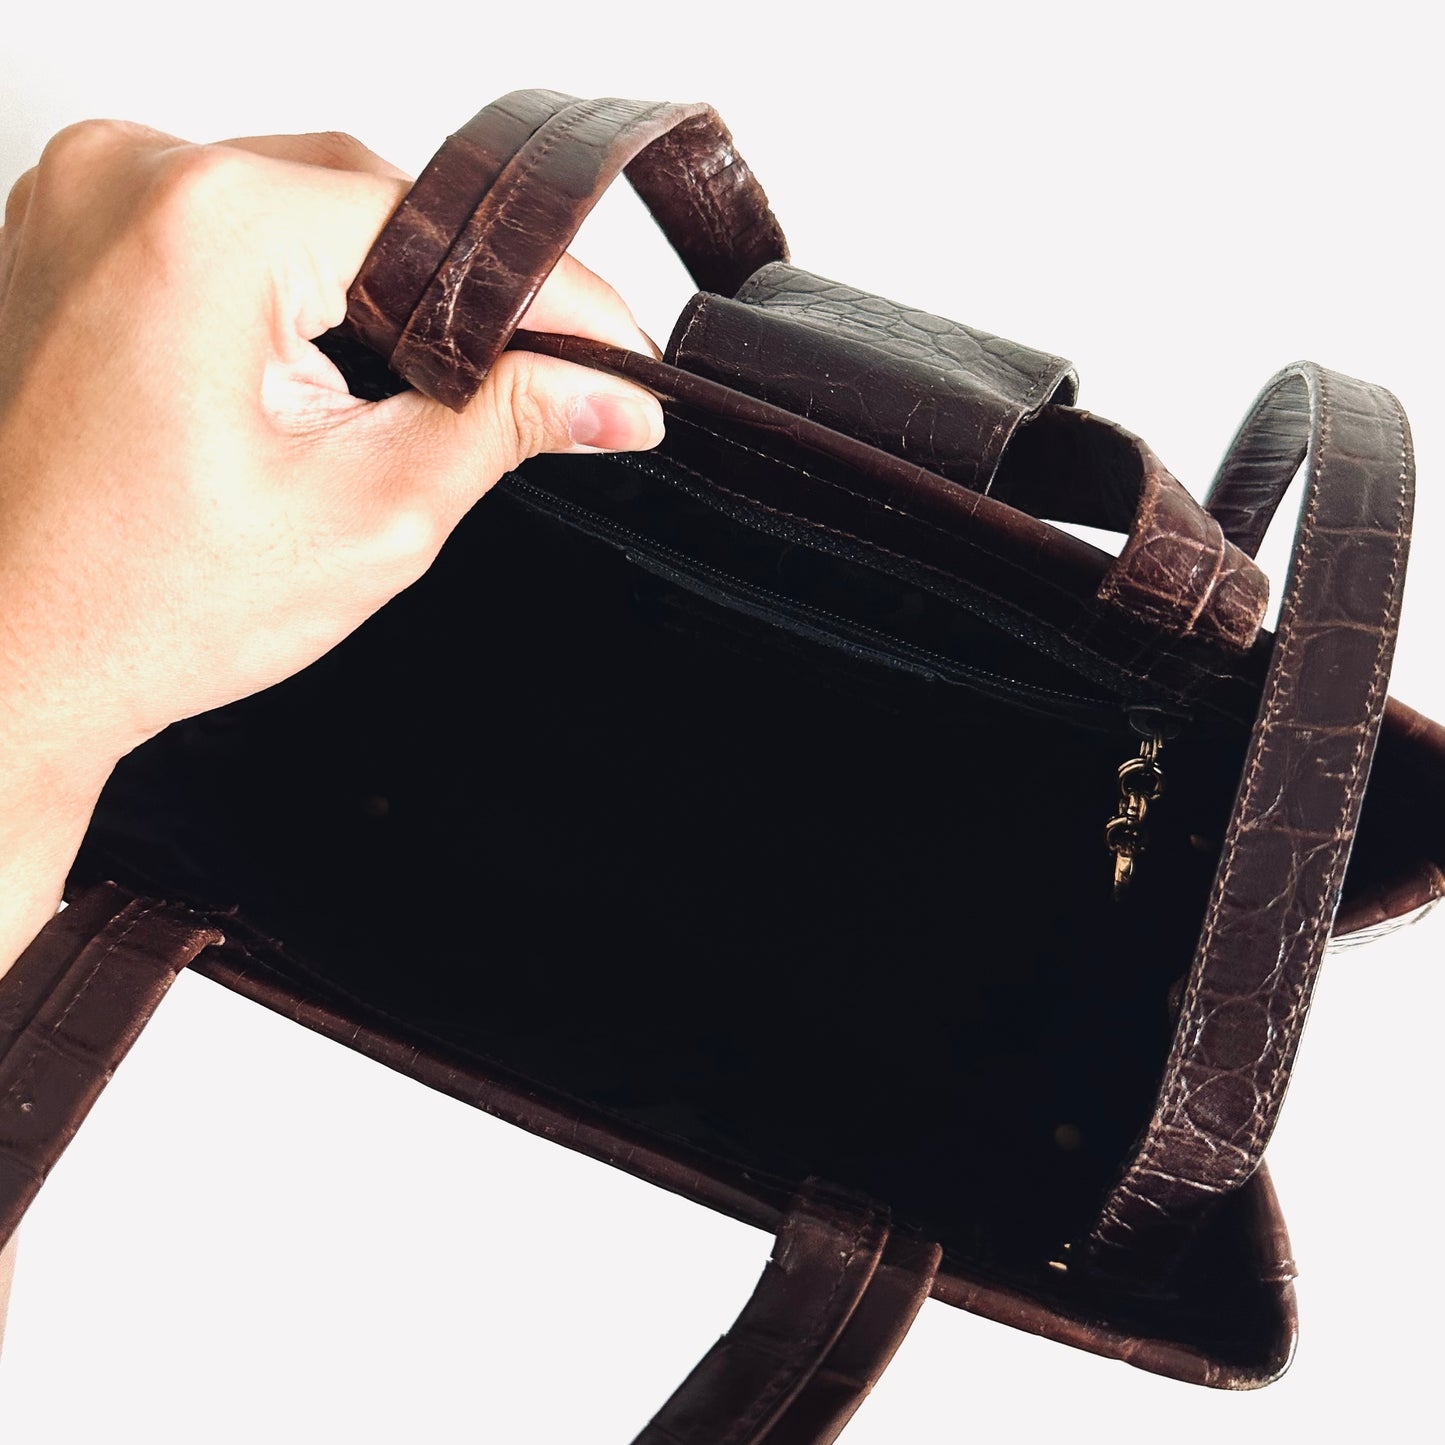 Salvatore Ferragamo Vara Dark Brown GHW Croc Embossed Leather 2-Way Shoulder Sling Top Handle Kelly Bag